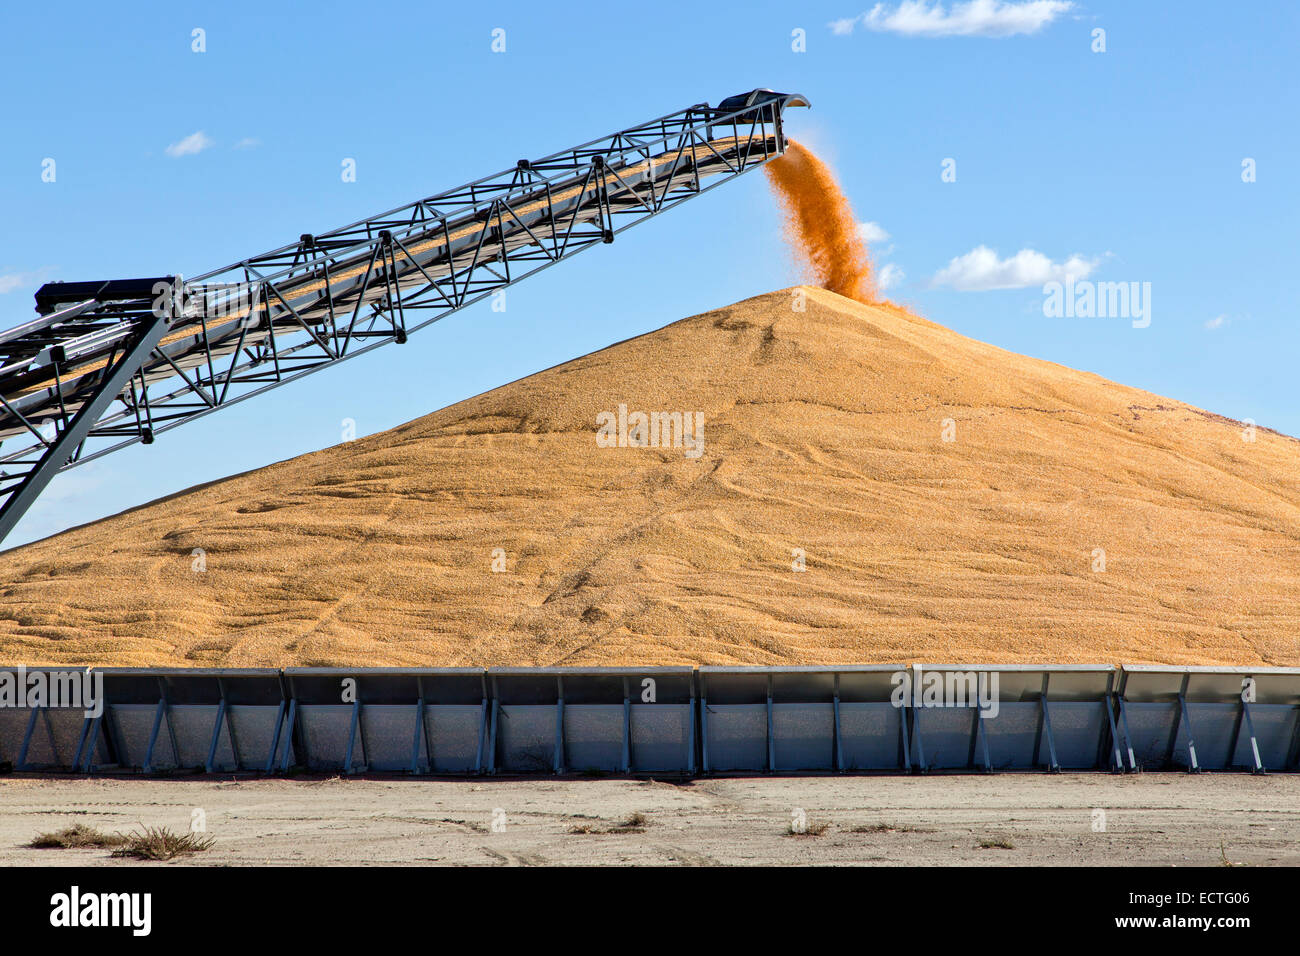 Transporte de maíz desgranado deposting en silo de almacenamiento. Foto de stock